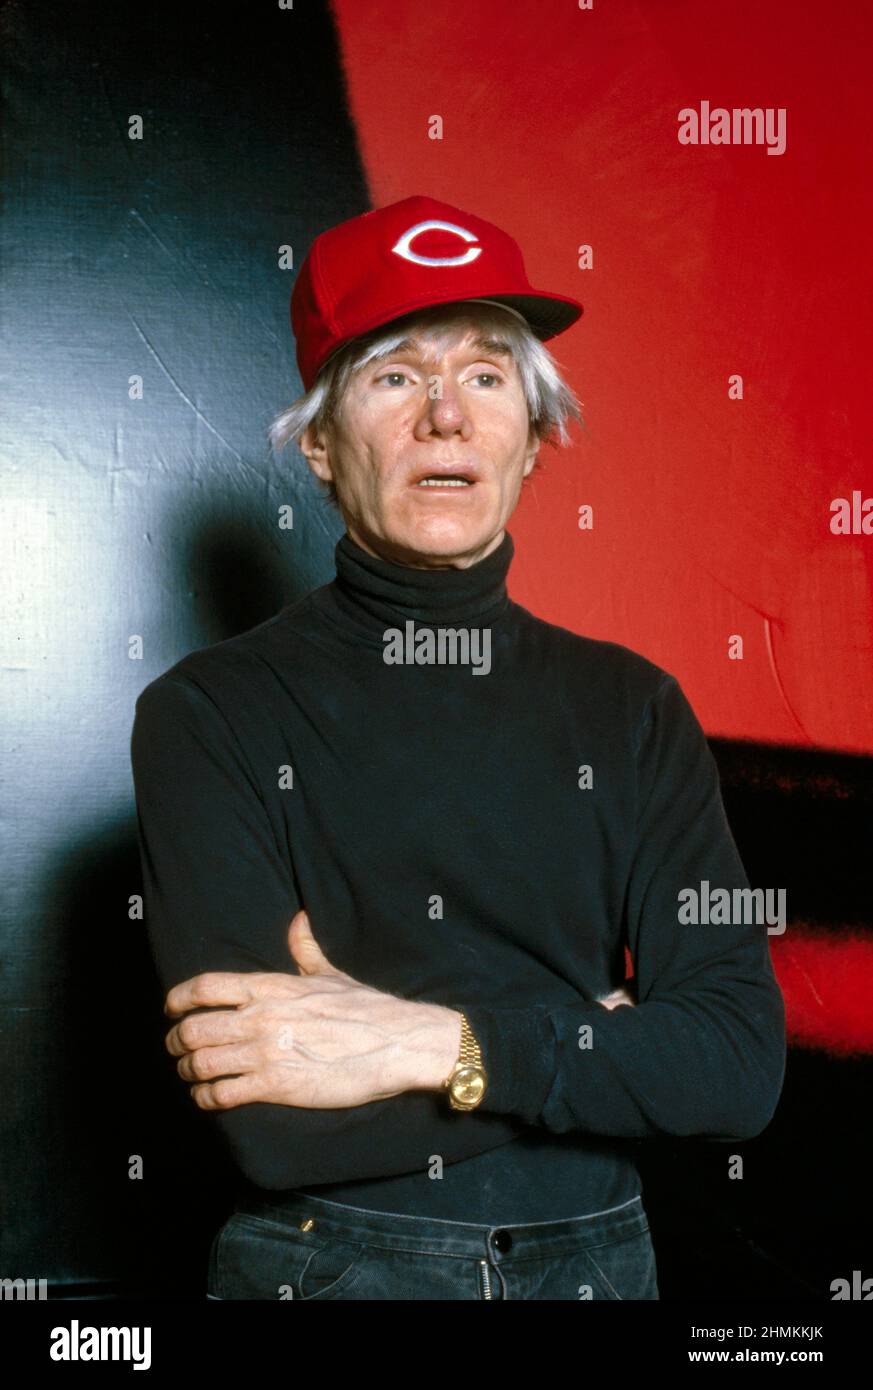 Artiste pop américain Andy Warhol (1928-1987), portrait de mi-longueur portant la casquette de baseball Cincinnati Reds, Bernard Gotfryd, 1982 Banque D'Images